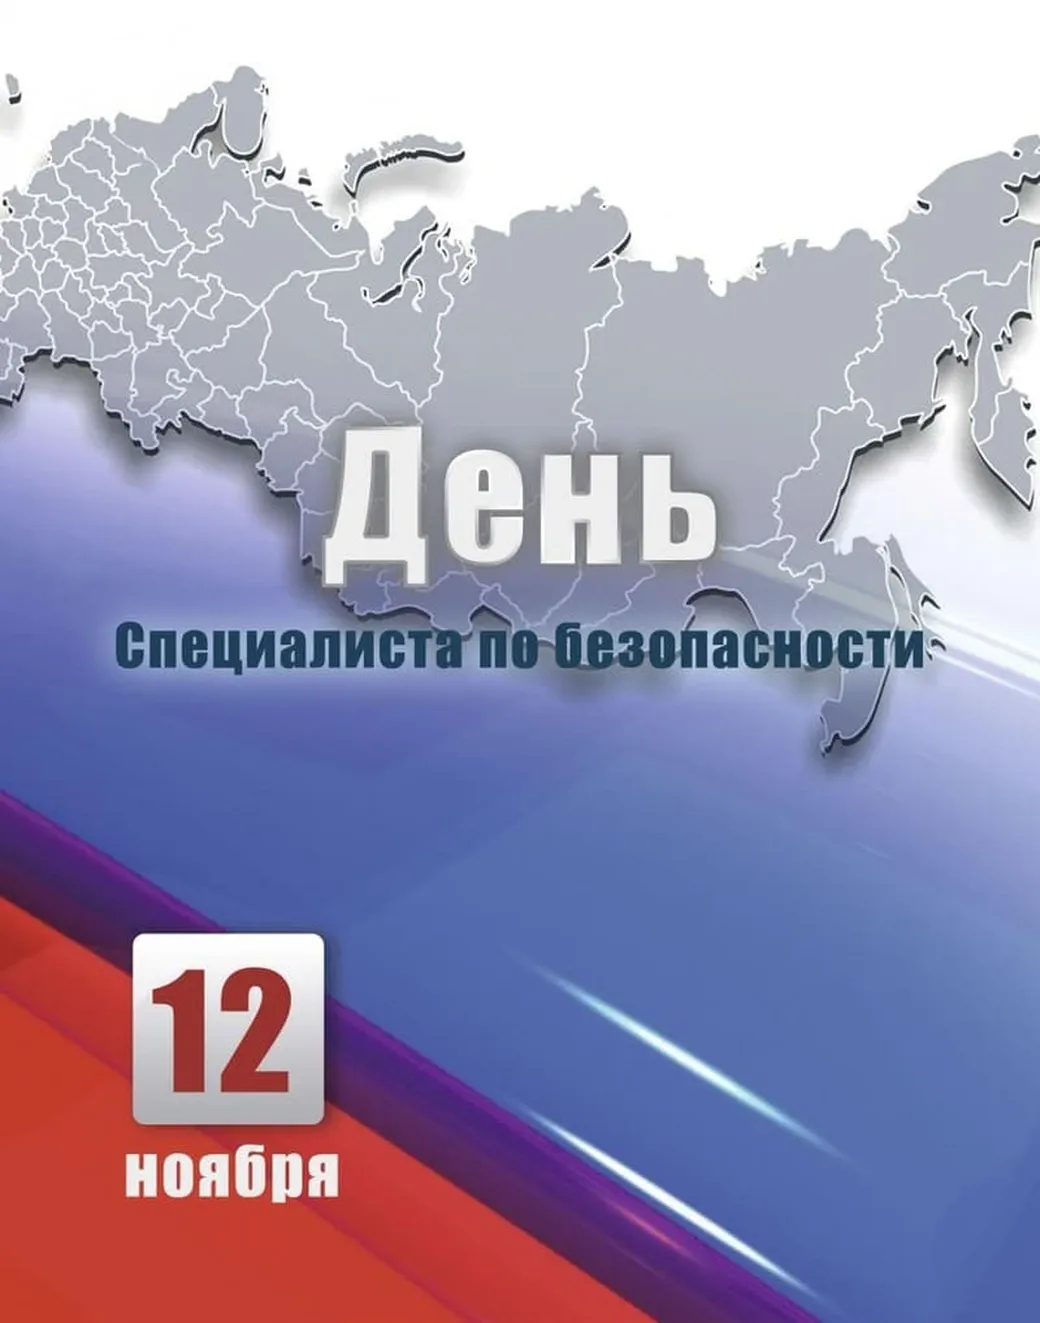 Большая открытка с днем специалиста по безопасности - скачать бесплатно на otkrytkivsem.ru